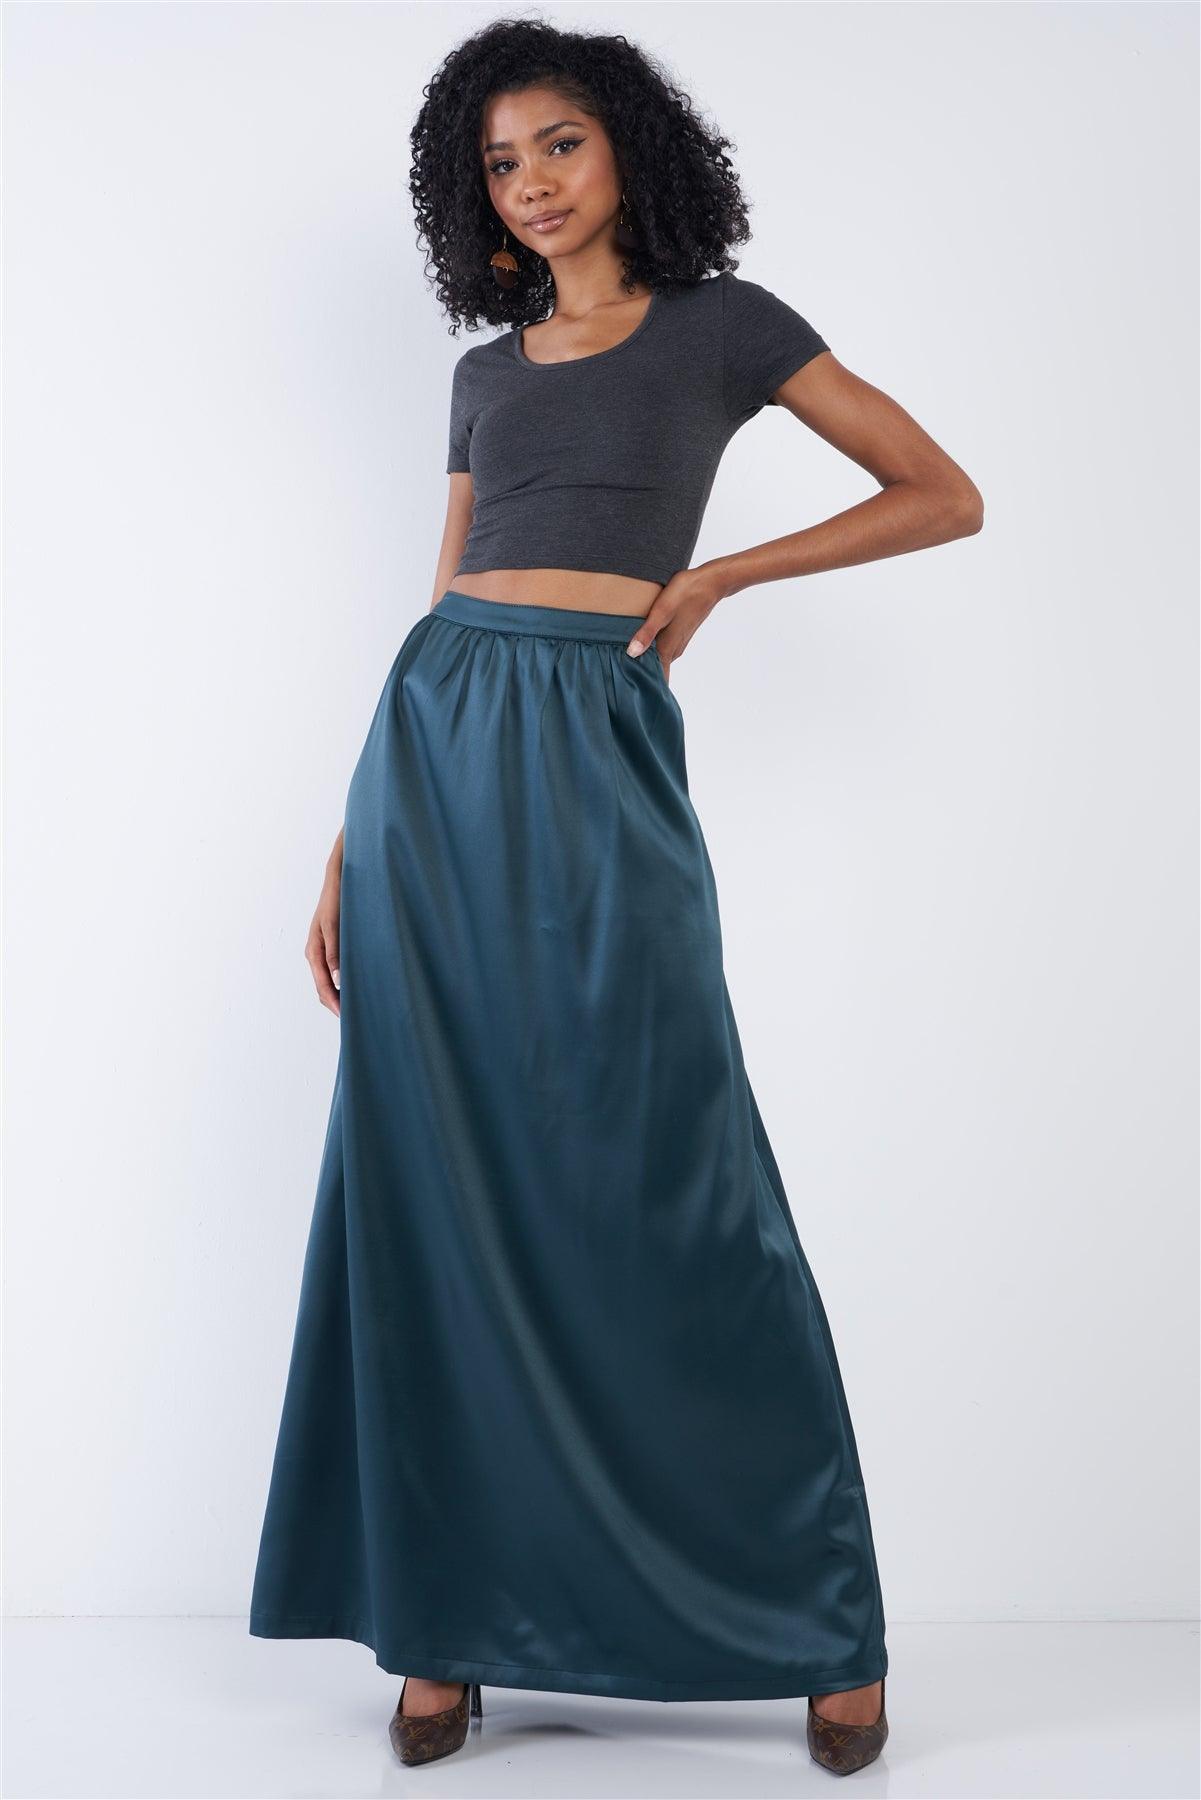 Emerald Green Satin High Waist Flowing Maxi Skirt /1-2-3